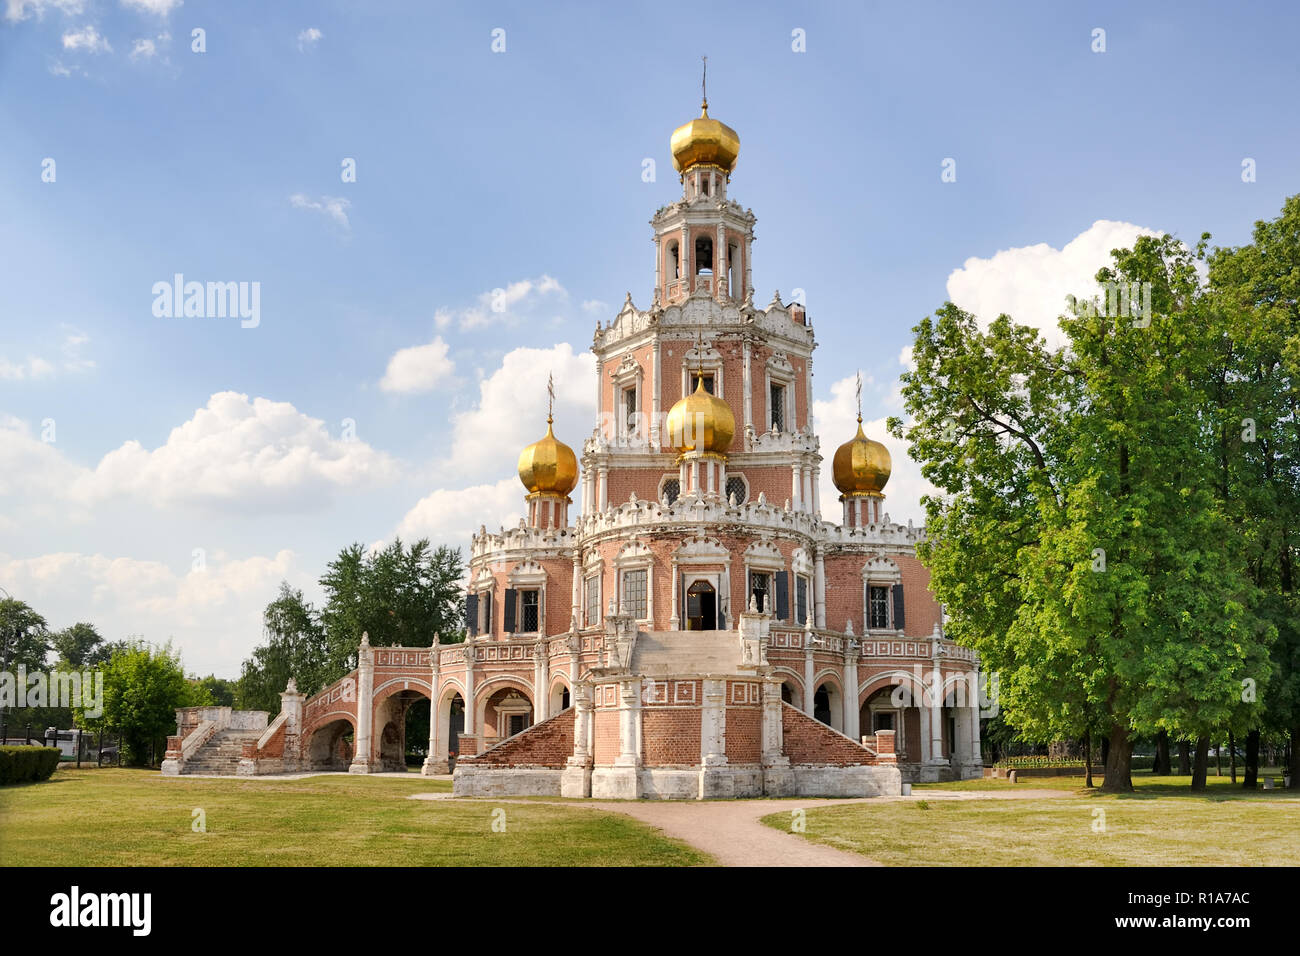 Chiesa di intercessione per i fili - La classica monumento di Naryshkin architettura barocca Foto Stock